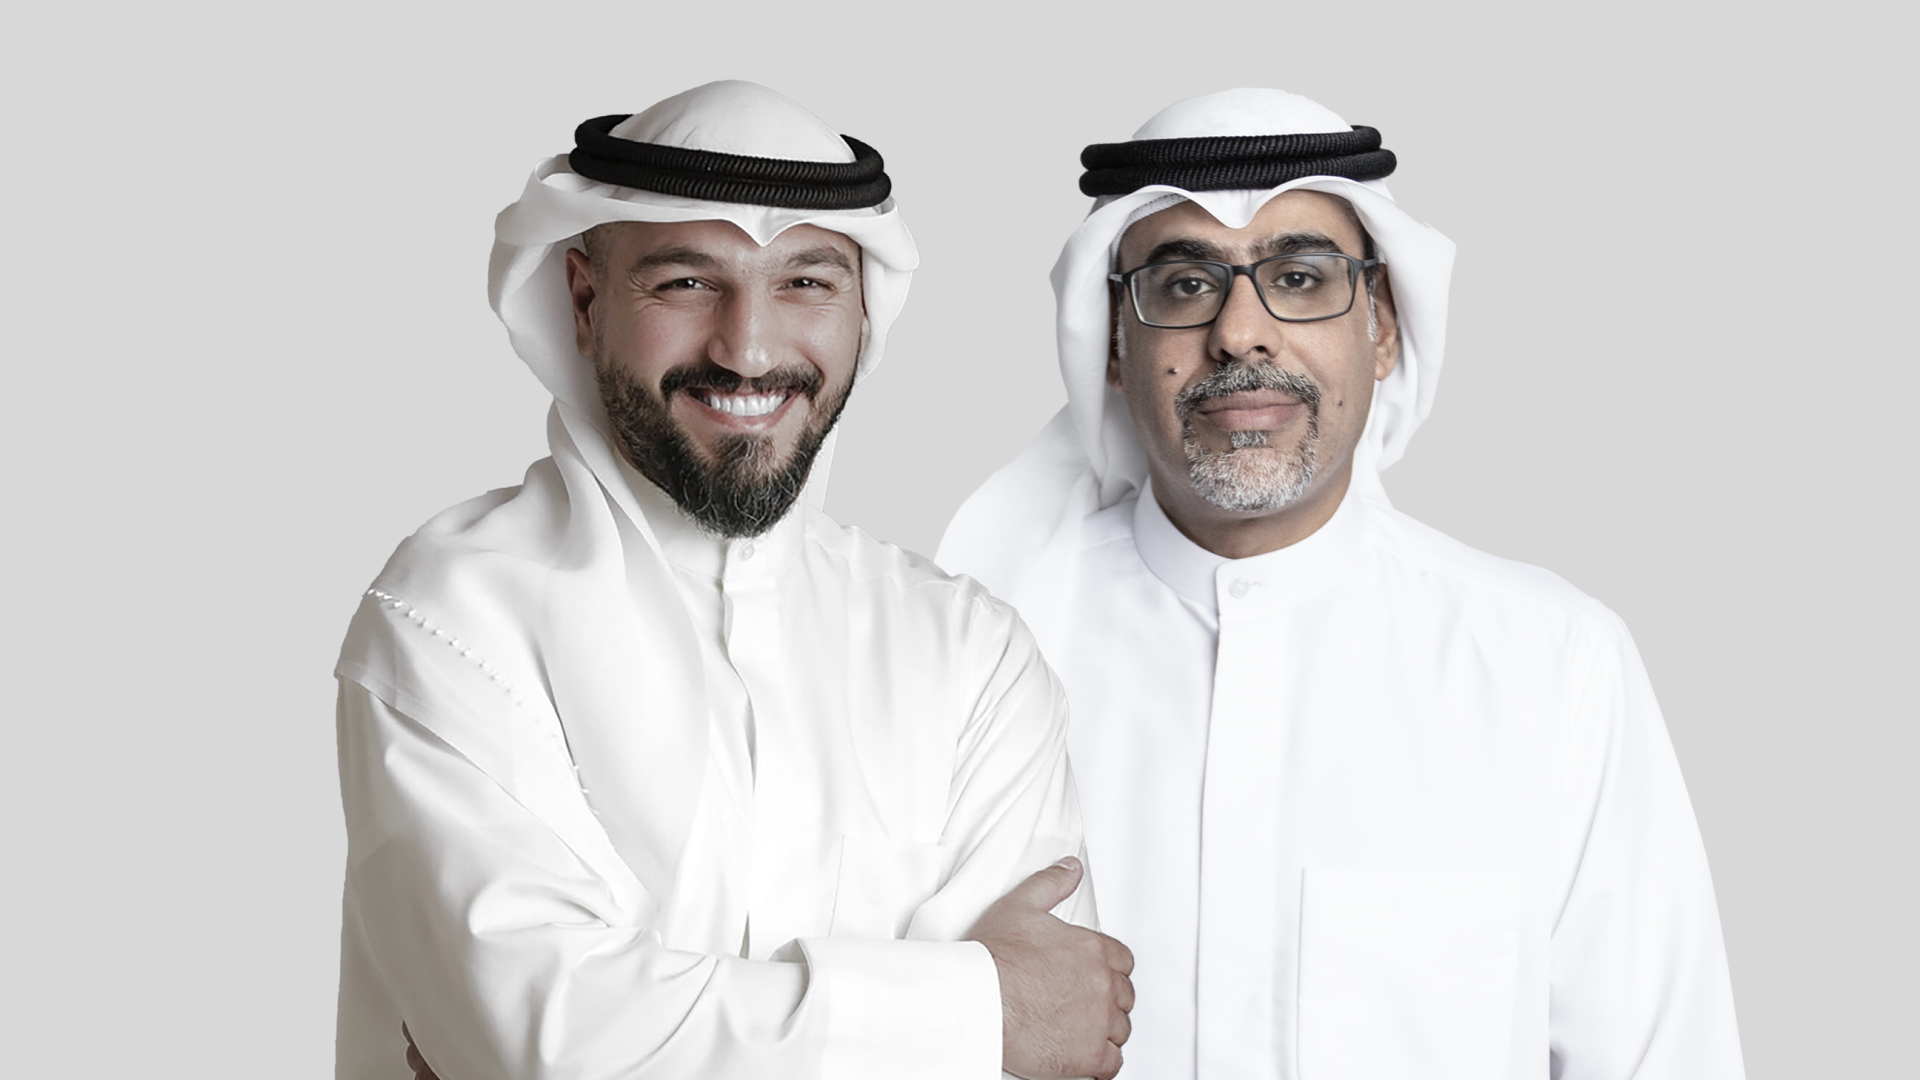  أحمد المنيس، المدير التنفيذي لتاب للمدفوعات، قطر. علي أبوالحسن، الشريك المؤسس والرئيس التنفيذي لتاب للمدفوعات